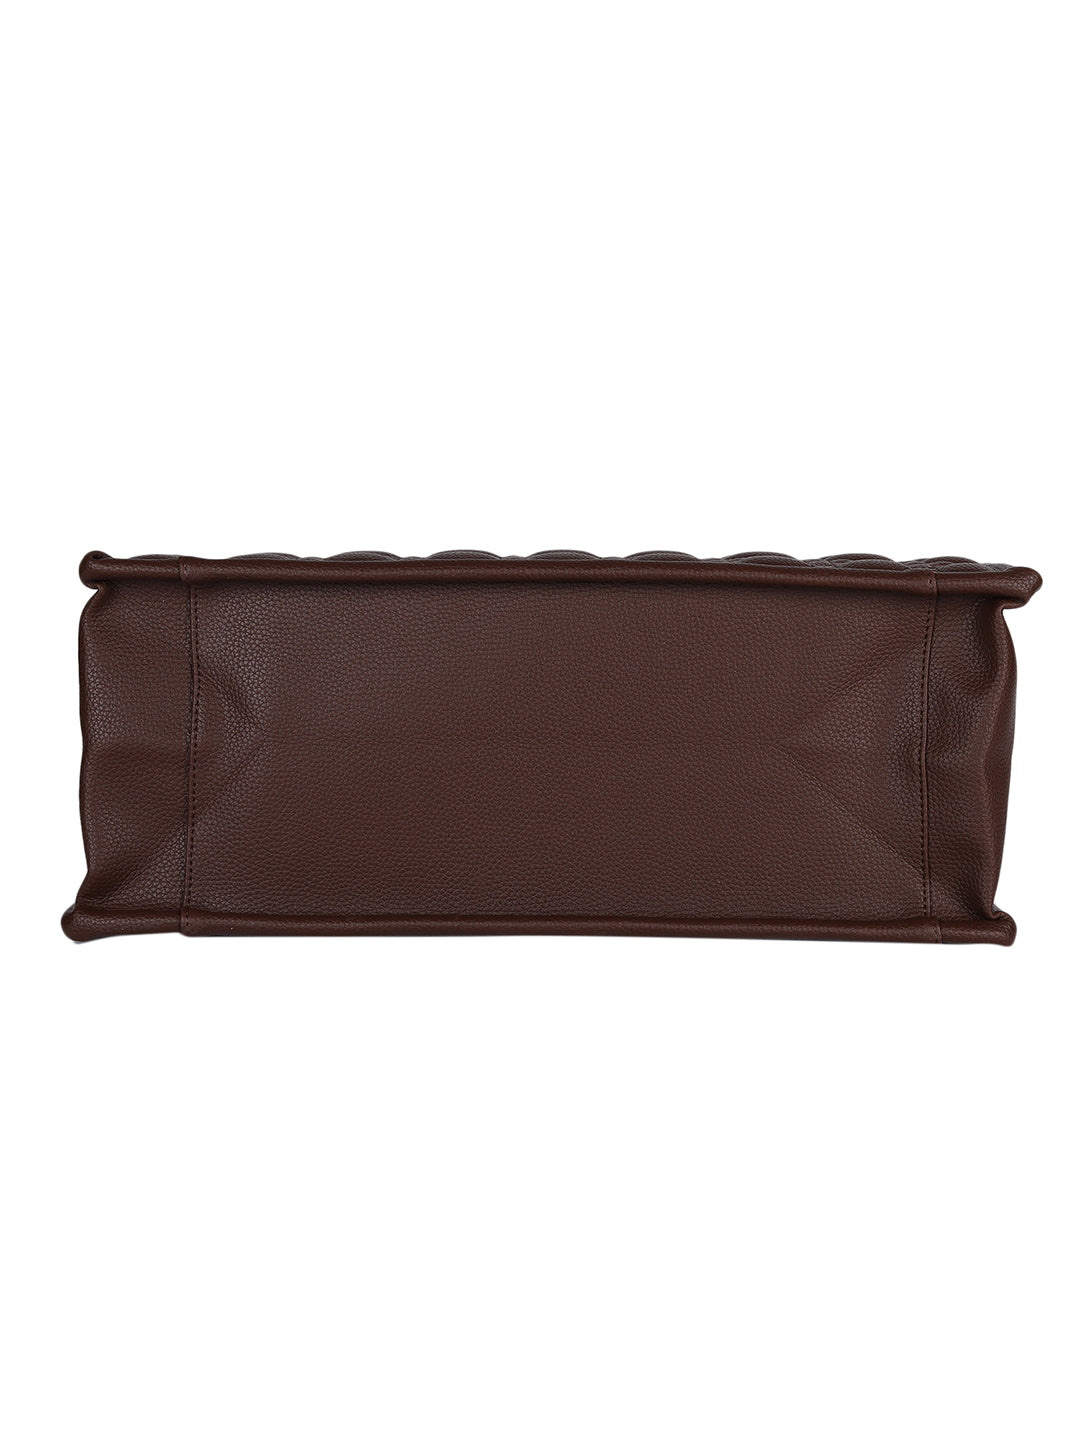 MINI WESST Brown Textured Tote Bag(MWTB098BR) – Miniwesst